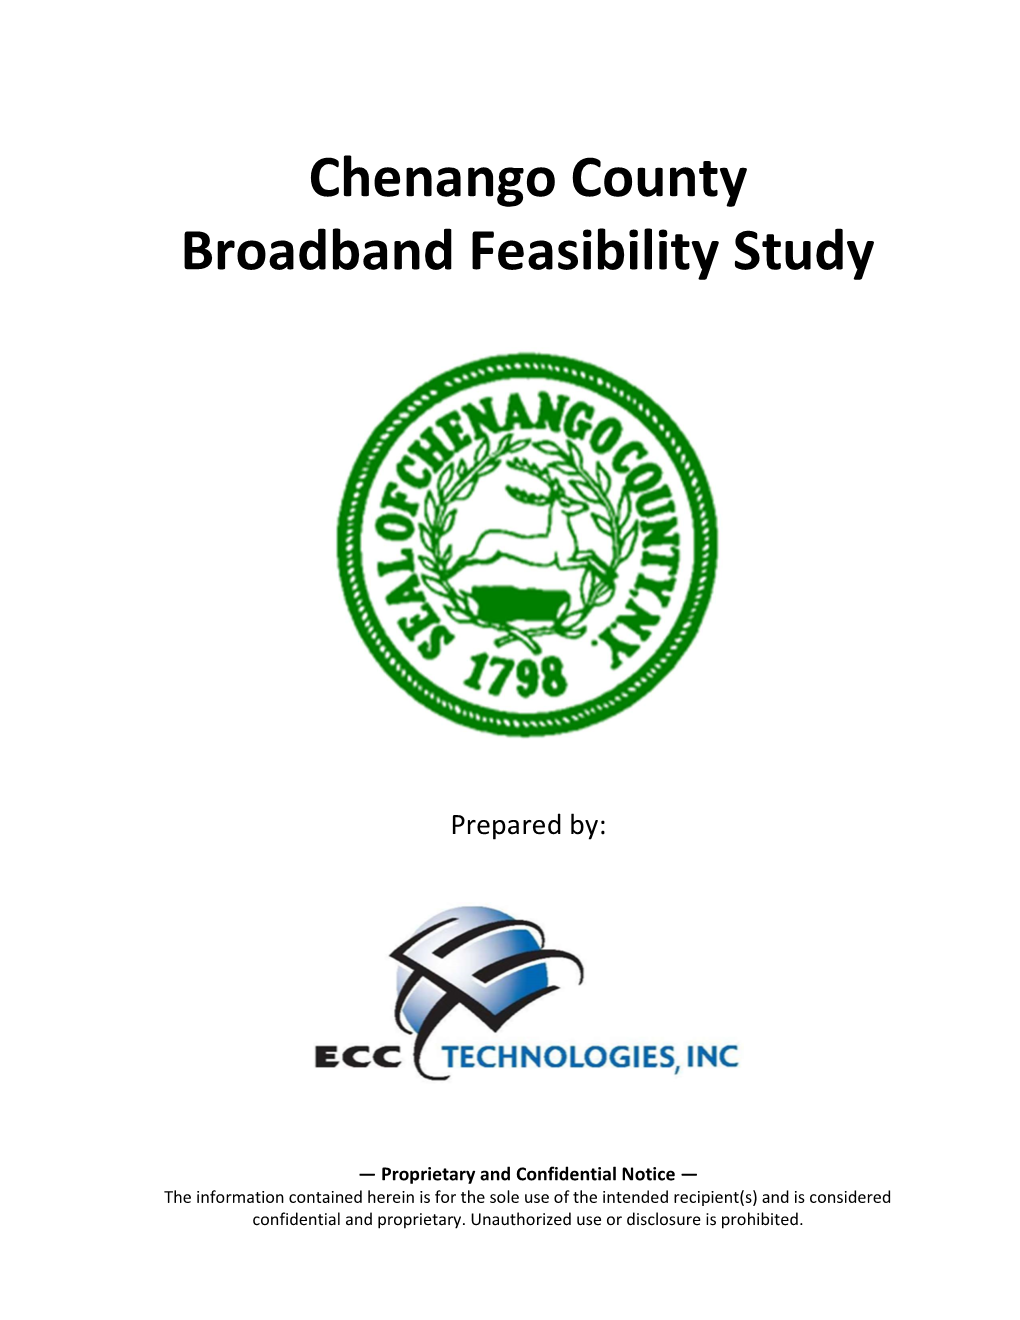 Chenango County Broadband Feasibility Study